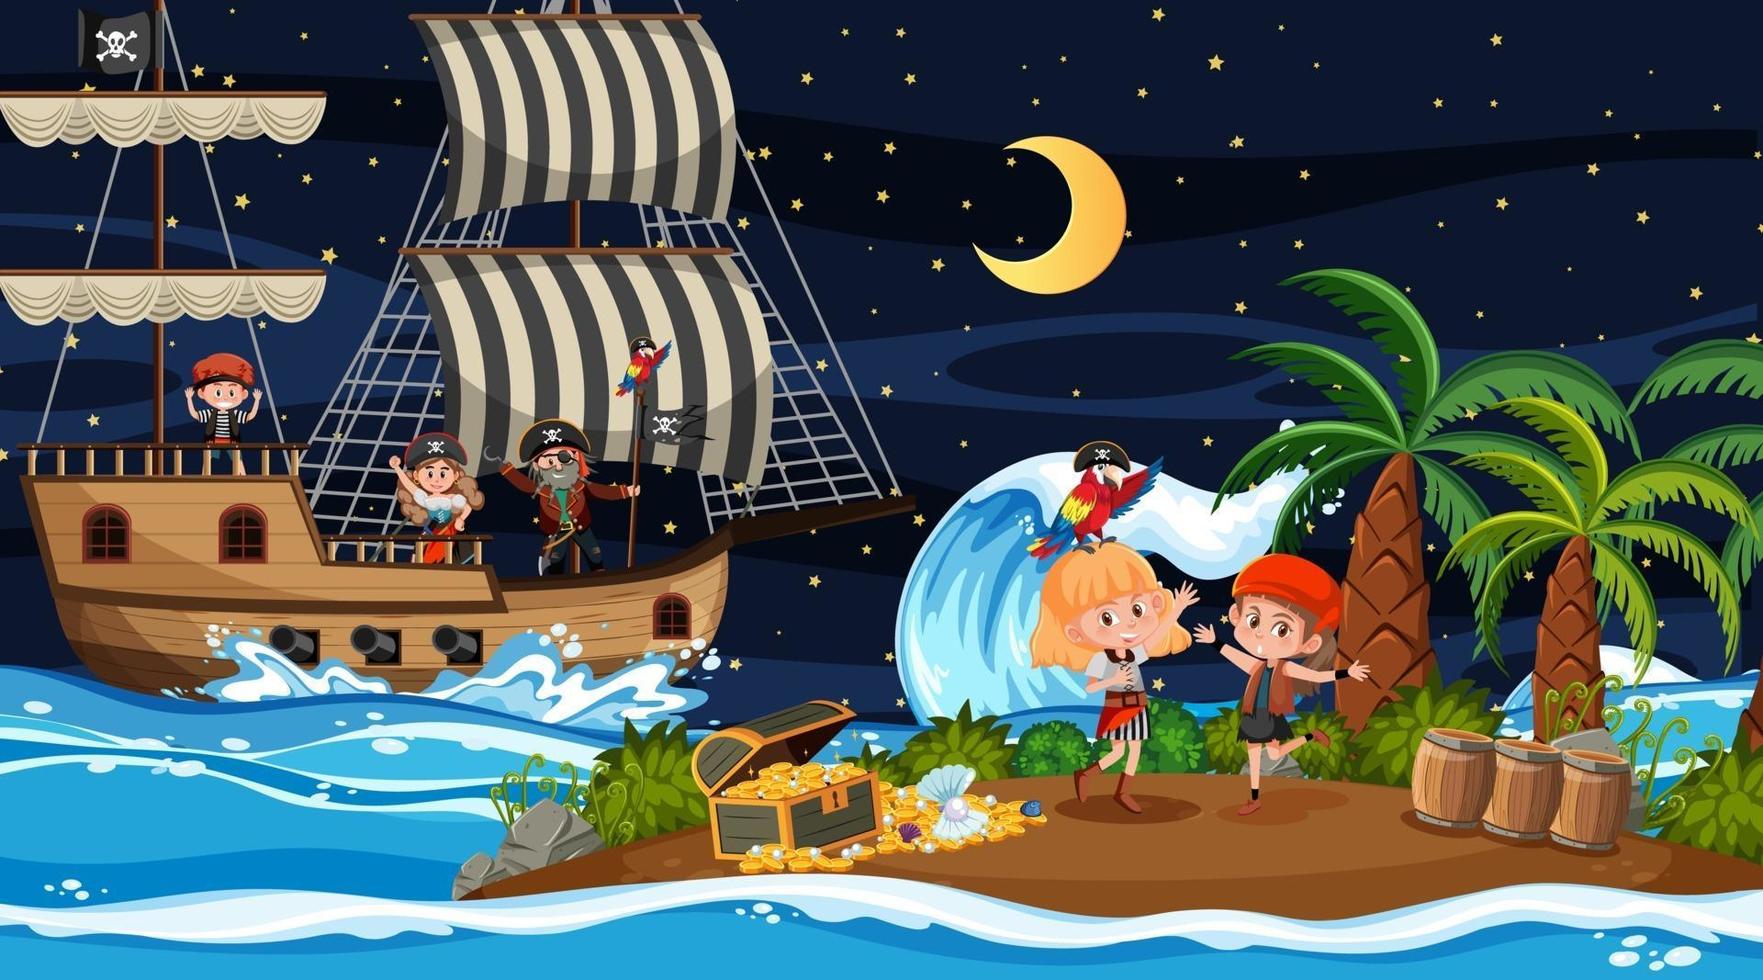 escena de la isla del tesoro en la noche con niños piratas en el barco vector